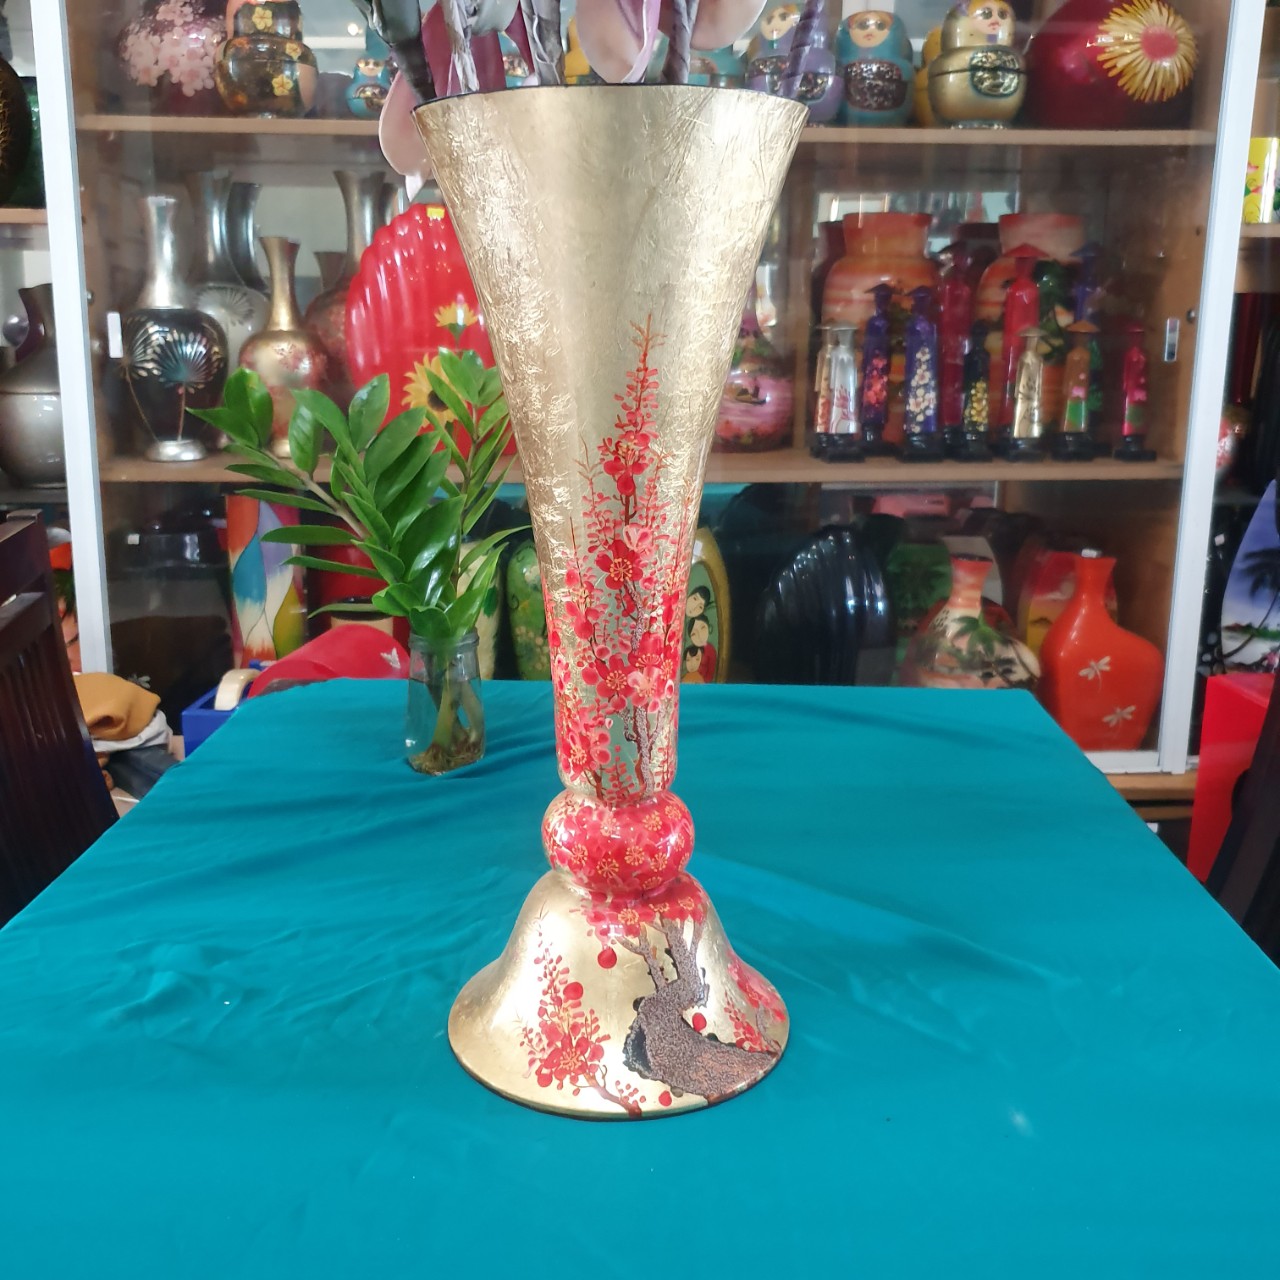 Bình Hoa Sơn Mài nền vàng hoa đào đỏ size 50x20 cm cắm hoa, trang trí kệ, bàn làm việc, quà tặng ý nghĩa